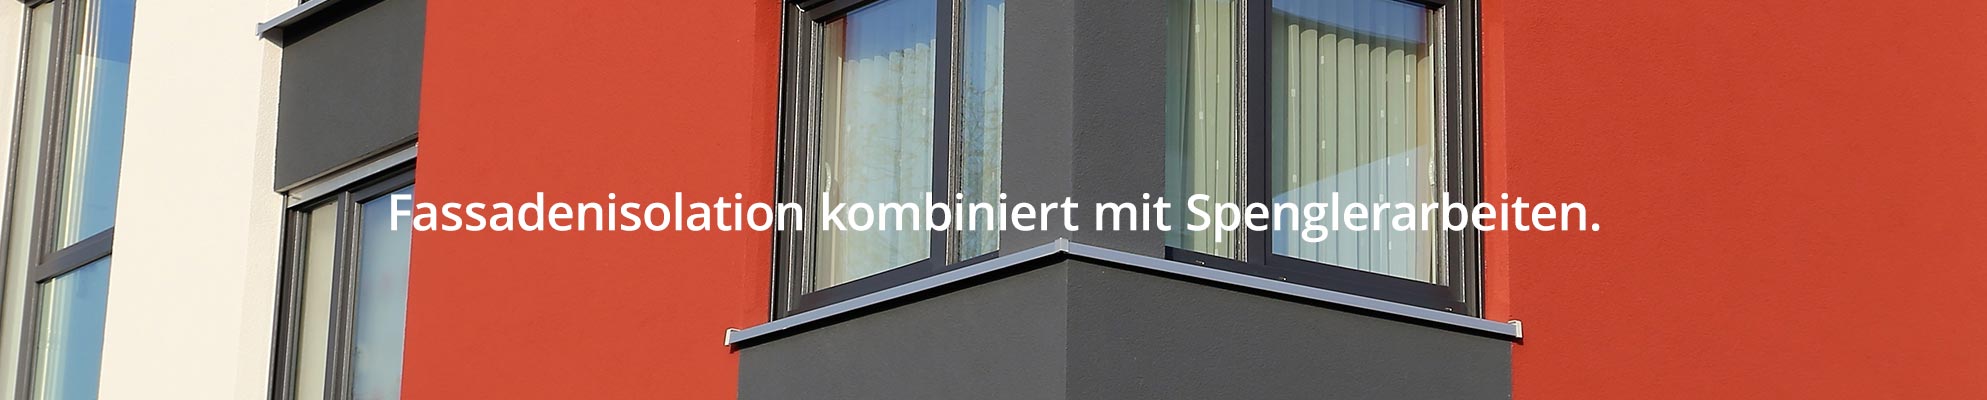 Fassaden-isolieren-und-renovieren-Maler-Hauser-Glarus-Nord